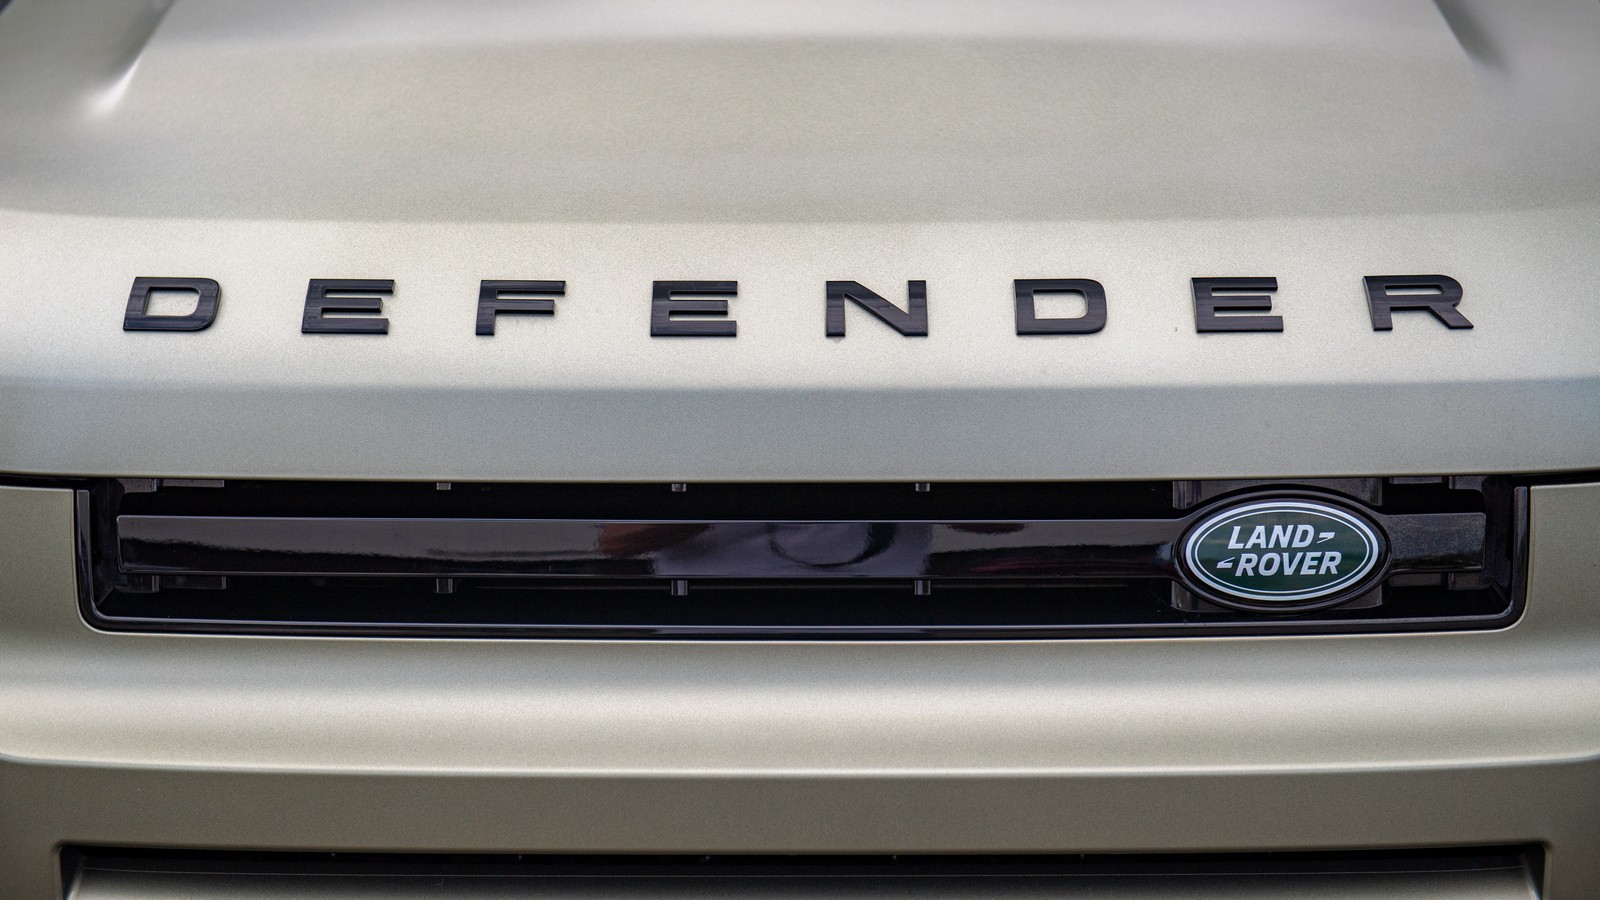 Возвращение Диско-4: новый Land Rover Defender на полигоне